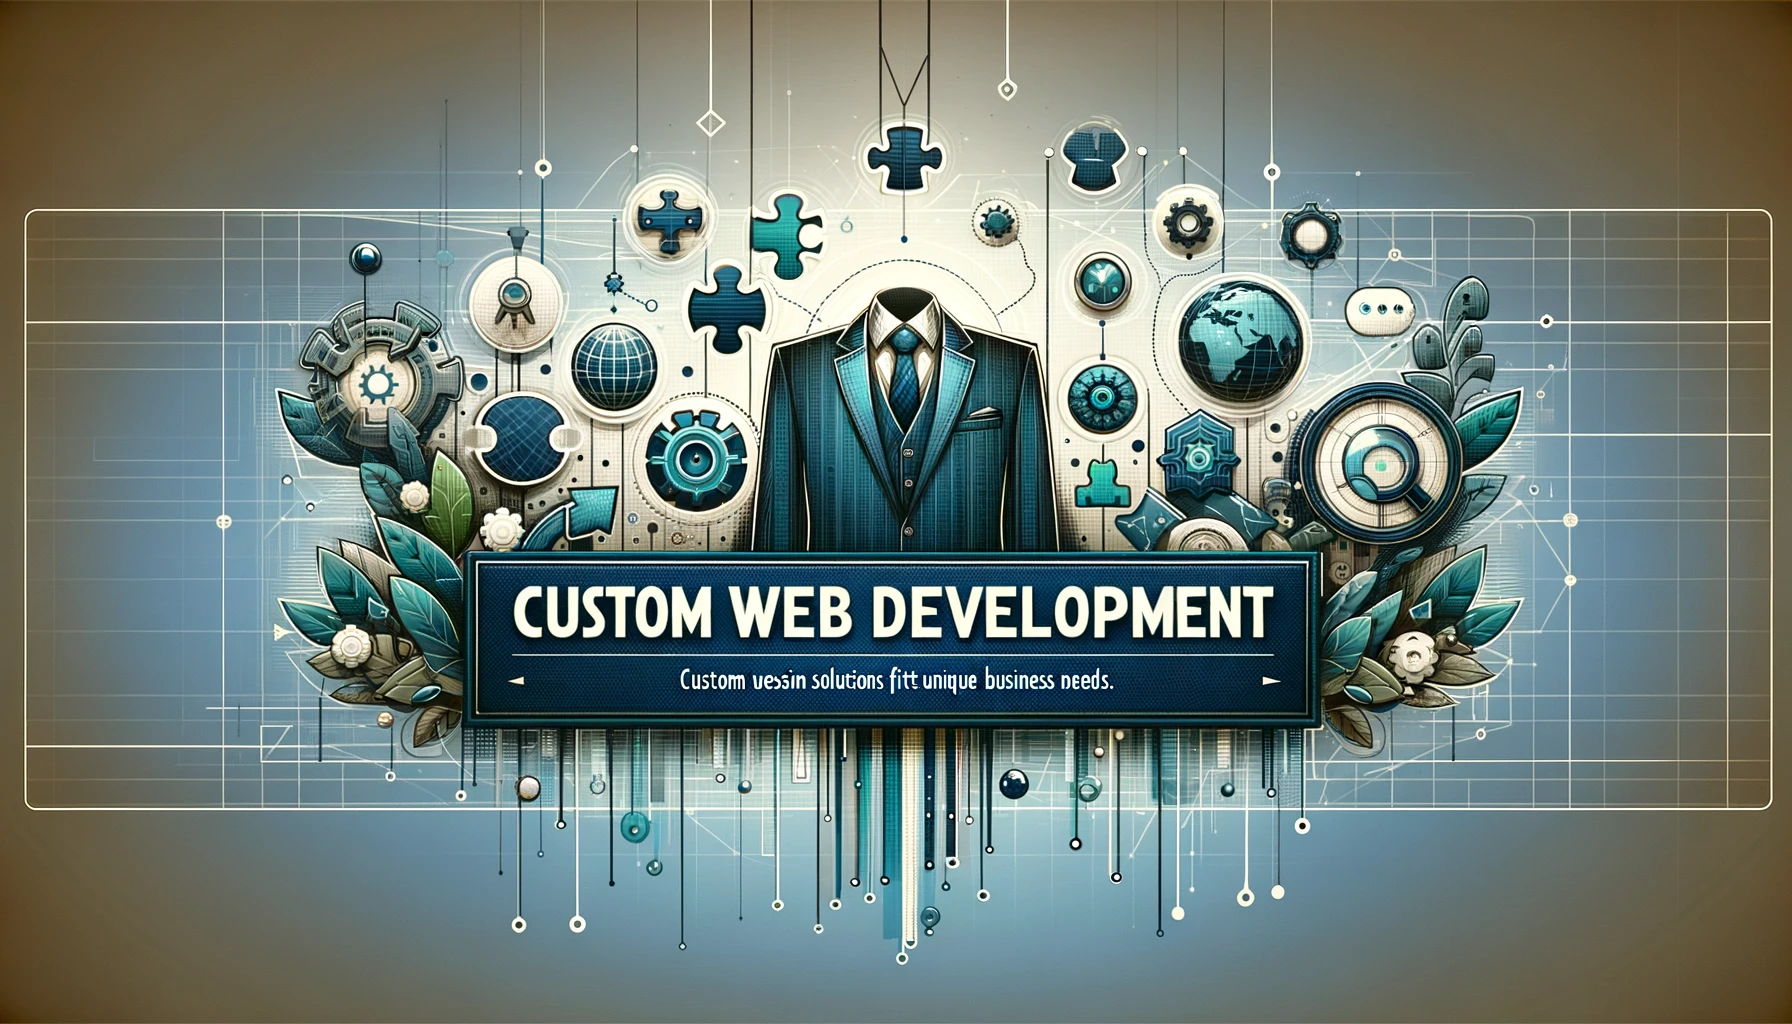 Баннер веб-сайта с индивидуальной разработкой, отображающий современный дизайн с элементами технологии и инноваций, символизирующий уникальные бизнес-решения.